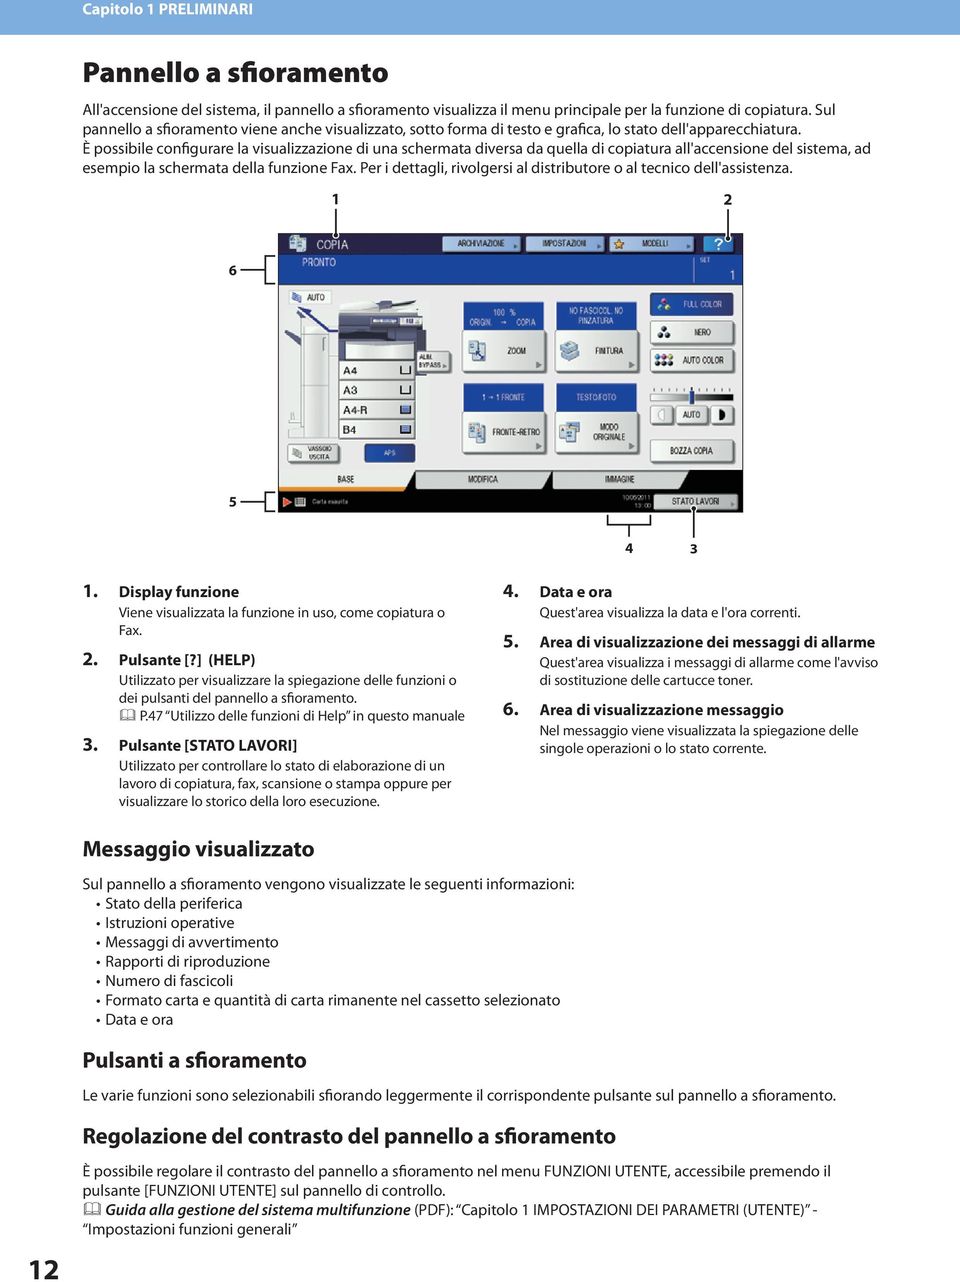 È possibile configurare la visualizzazione di una schermata diversa da quella di copiatura all'accensione del sistema, ad esempio la schermata della funzione Fax.